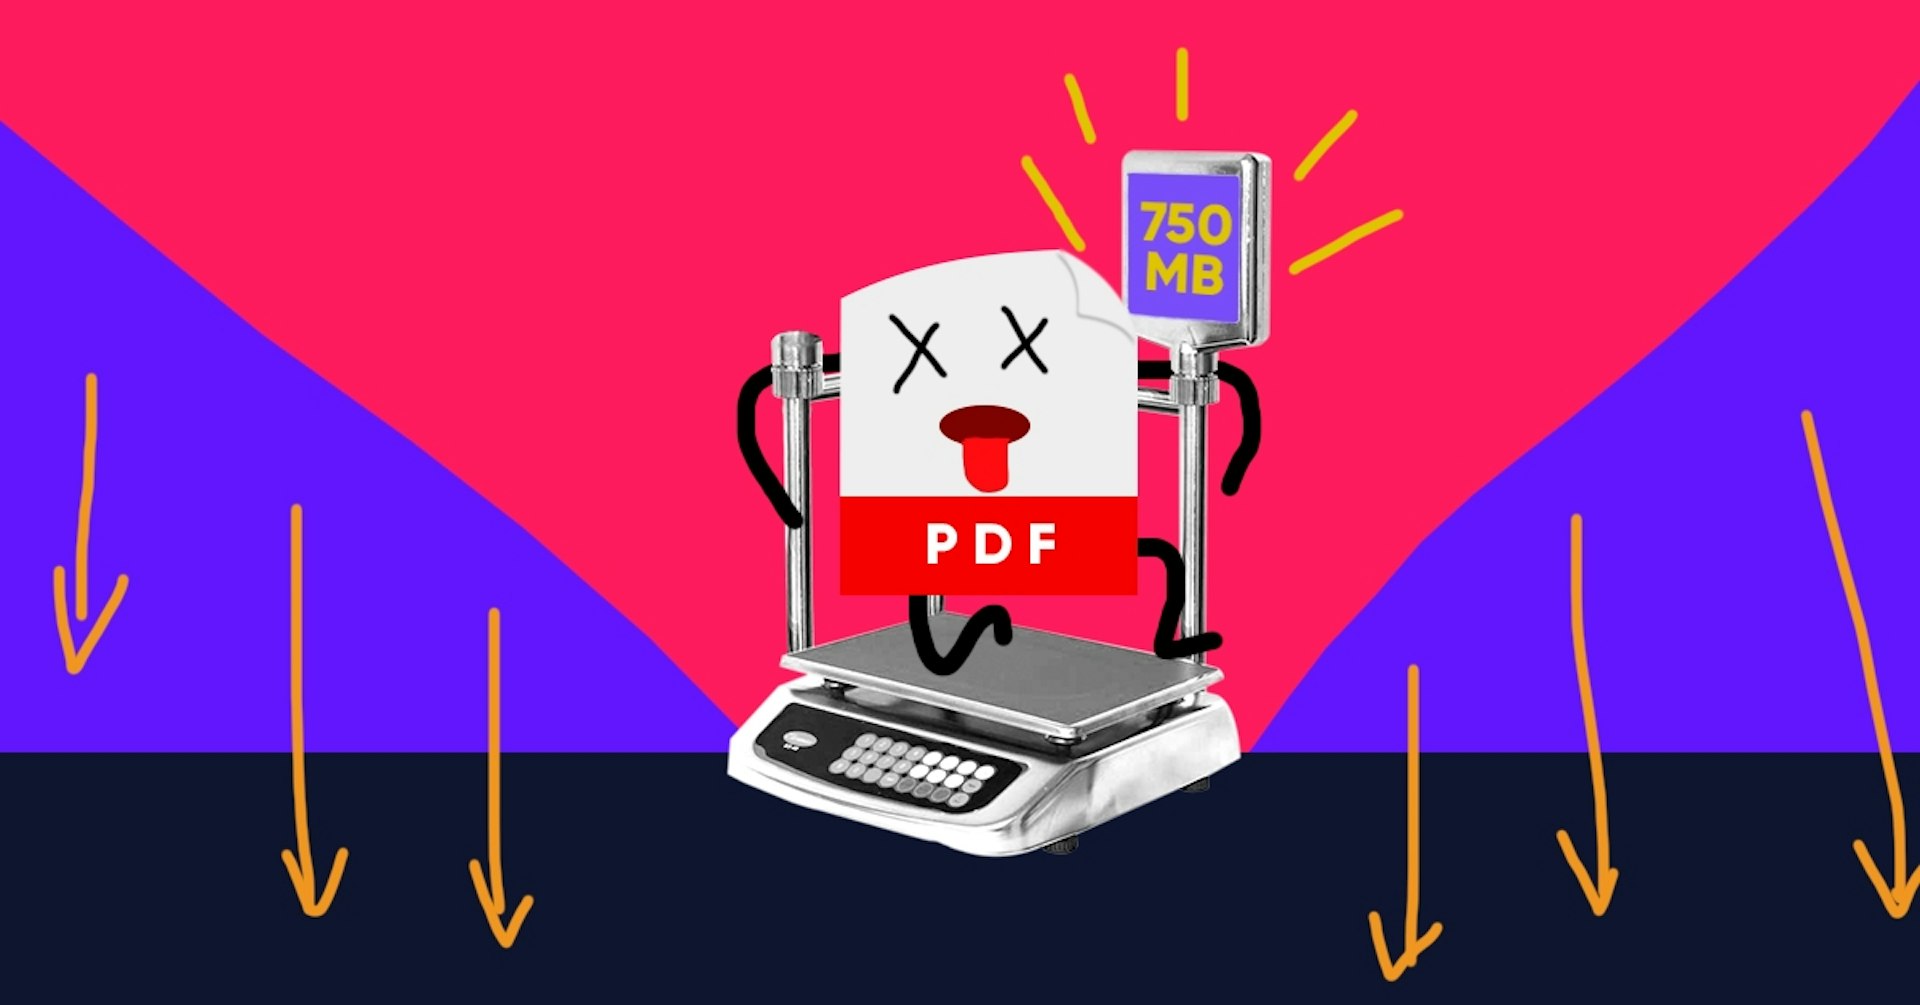 ¿Quieres reducir el tamaño de un archivo PDF? Descubre cómo